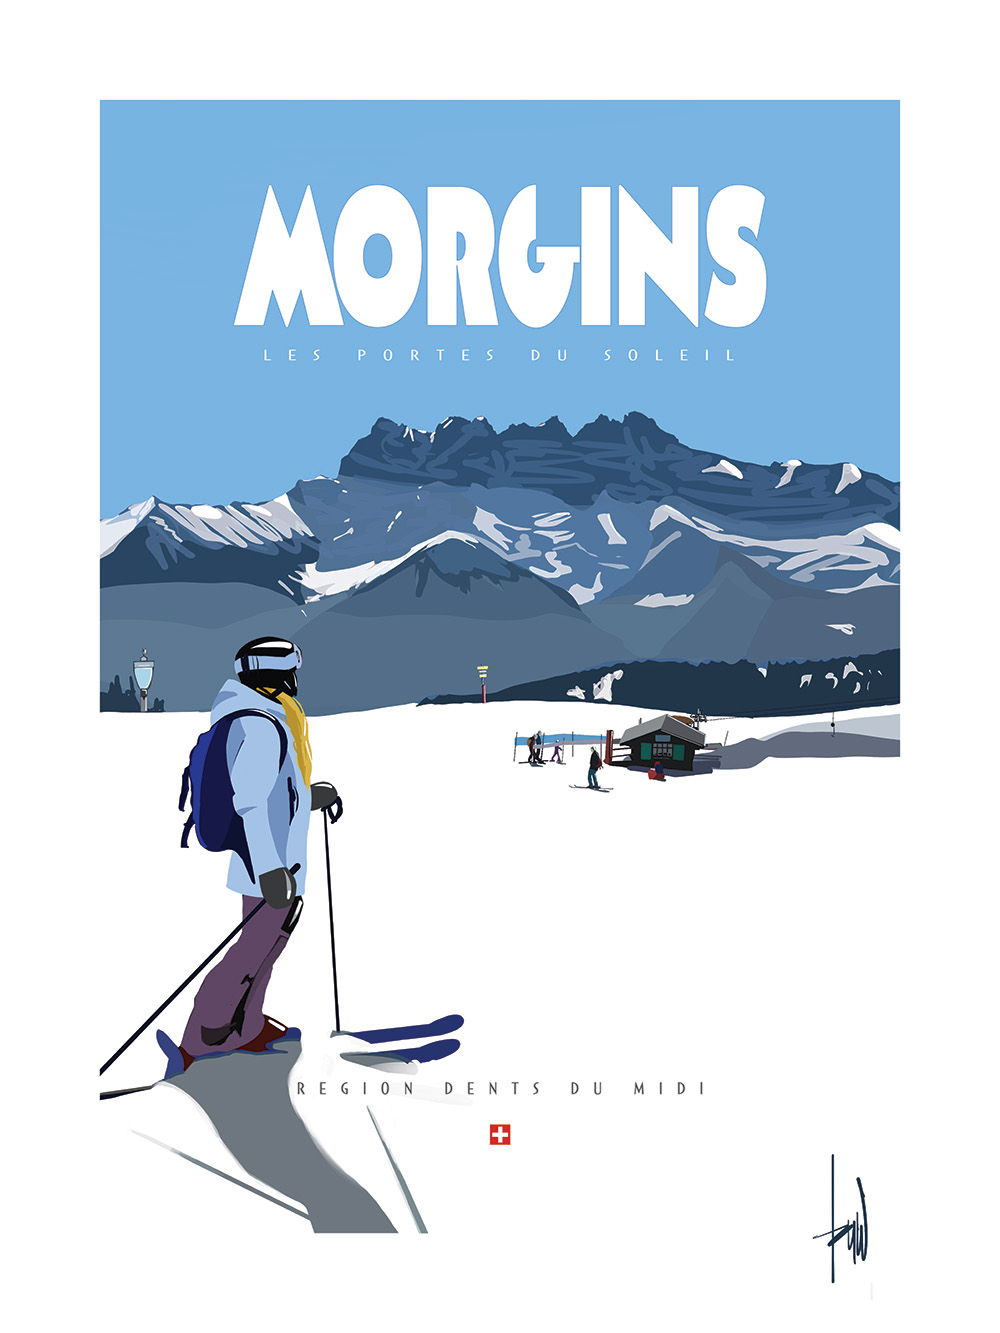 Ski Poster Champoussin Region Dents du Midi Switzerland Portes du Soleil Morgins